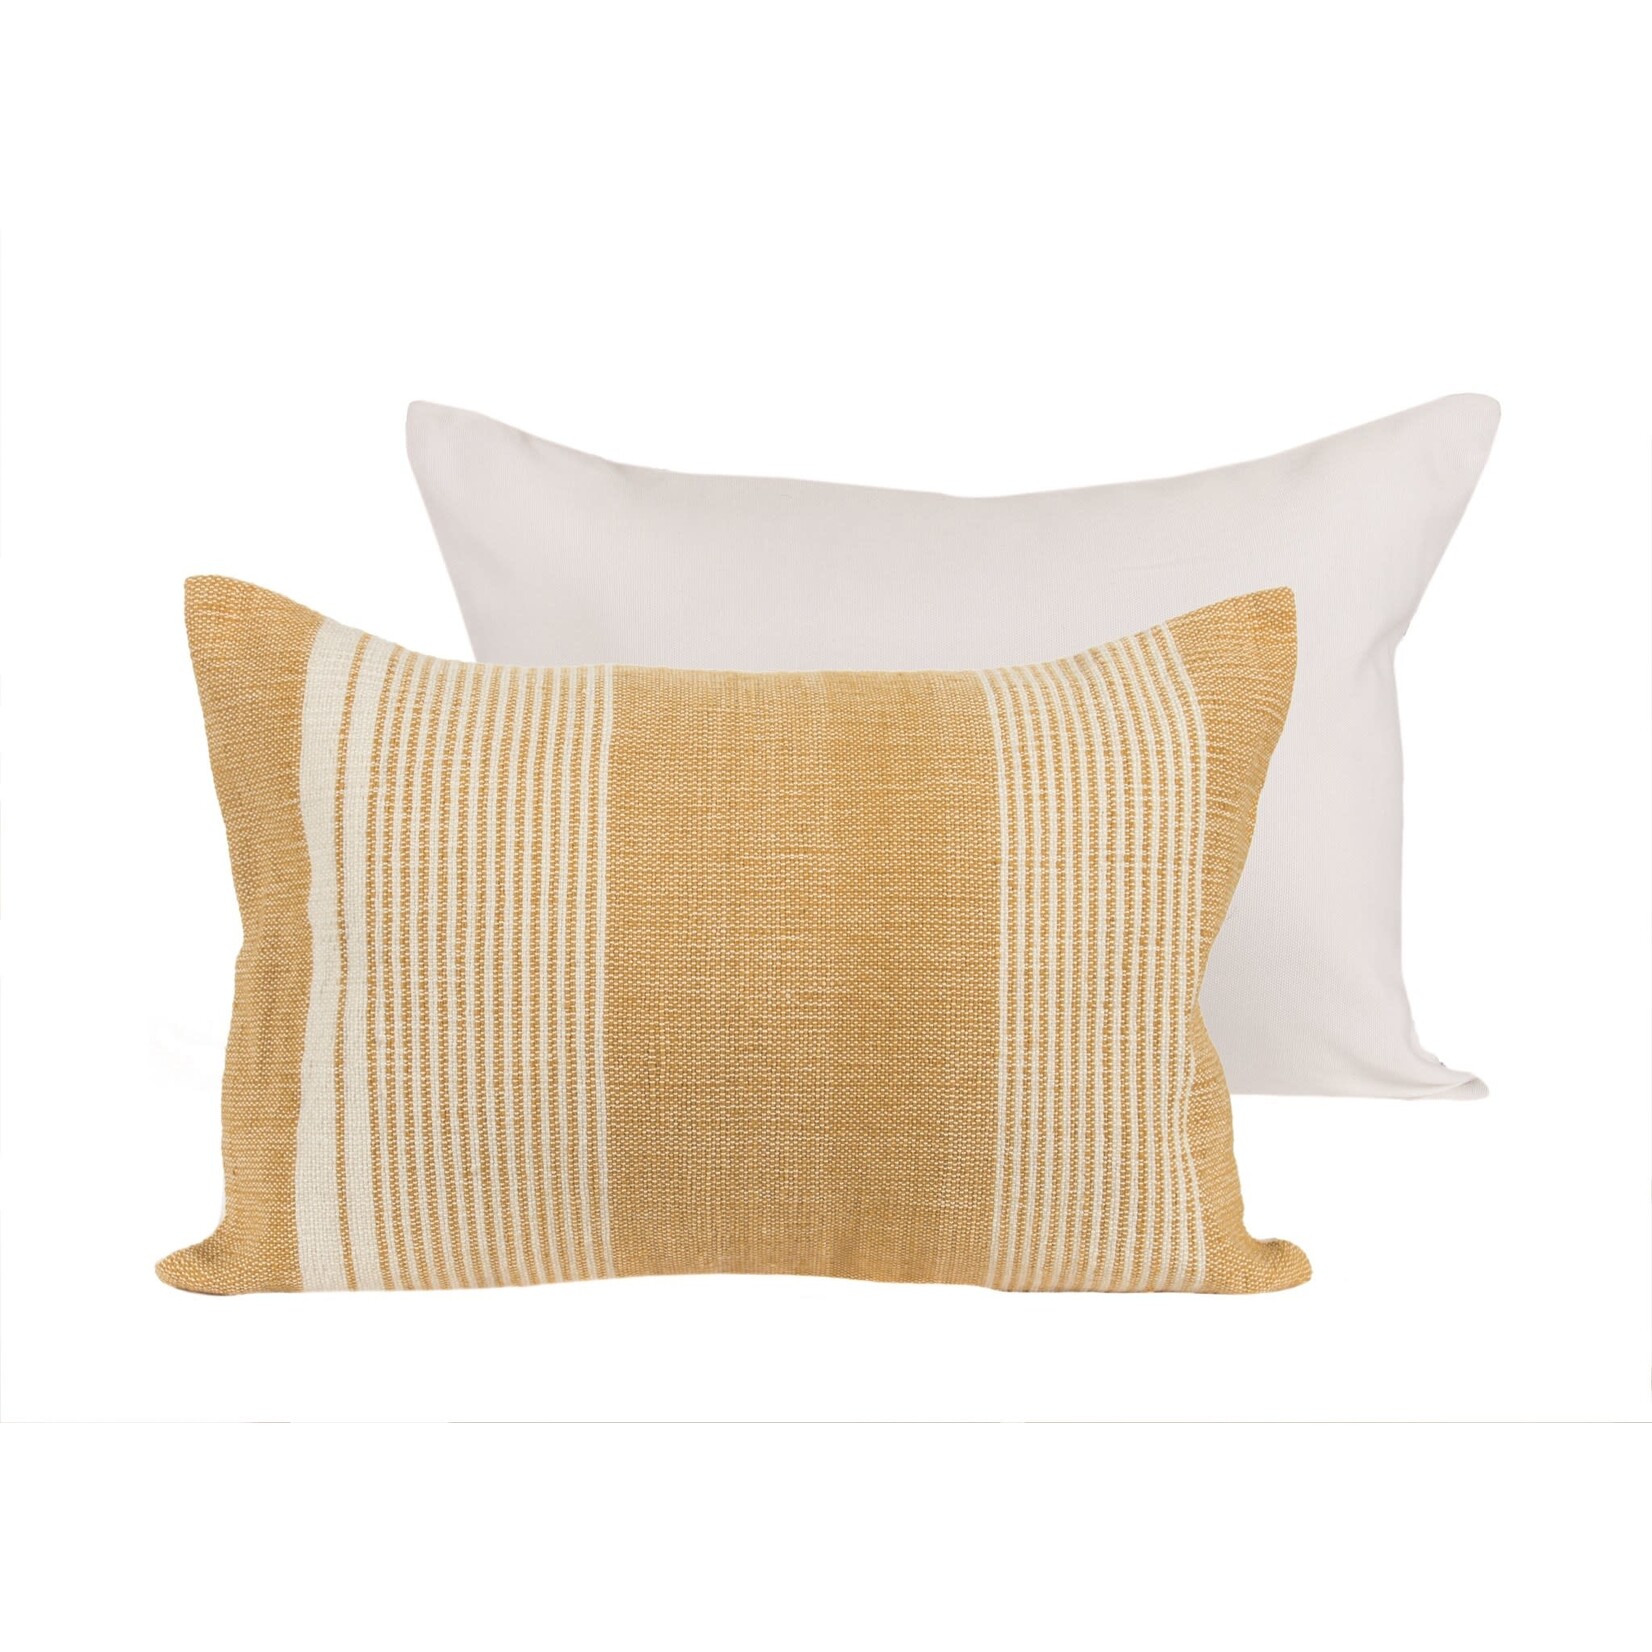 Nutcracker Mustard Stripe Pillow - Indoor/Outdoor - 20"x14"